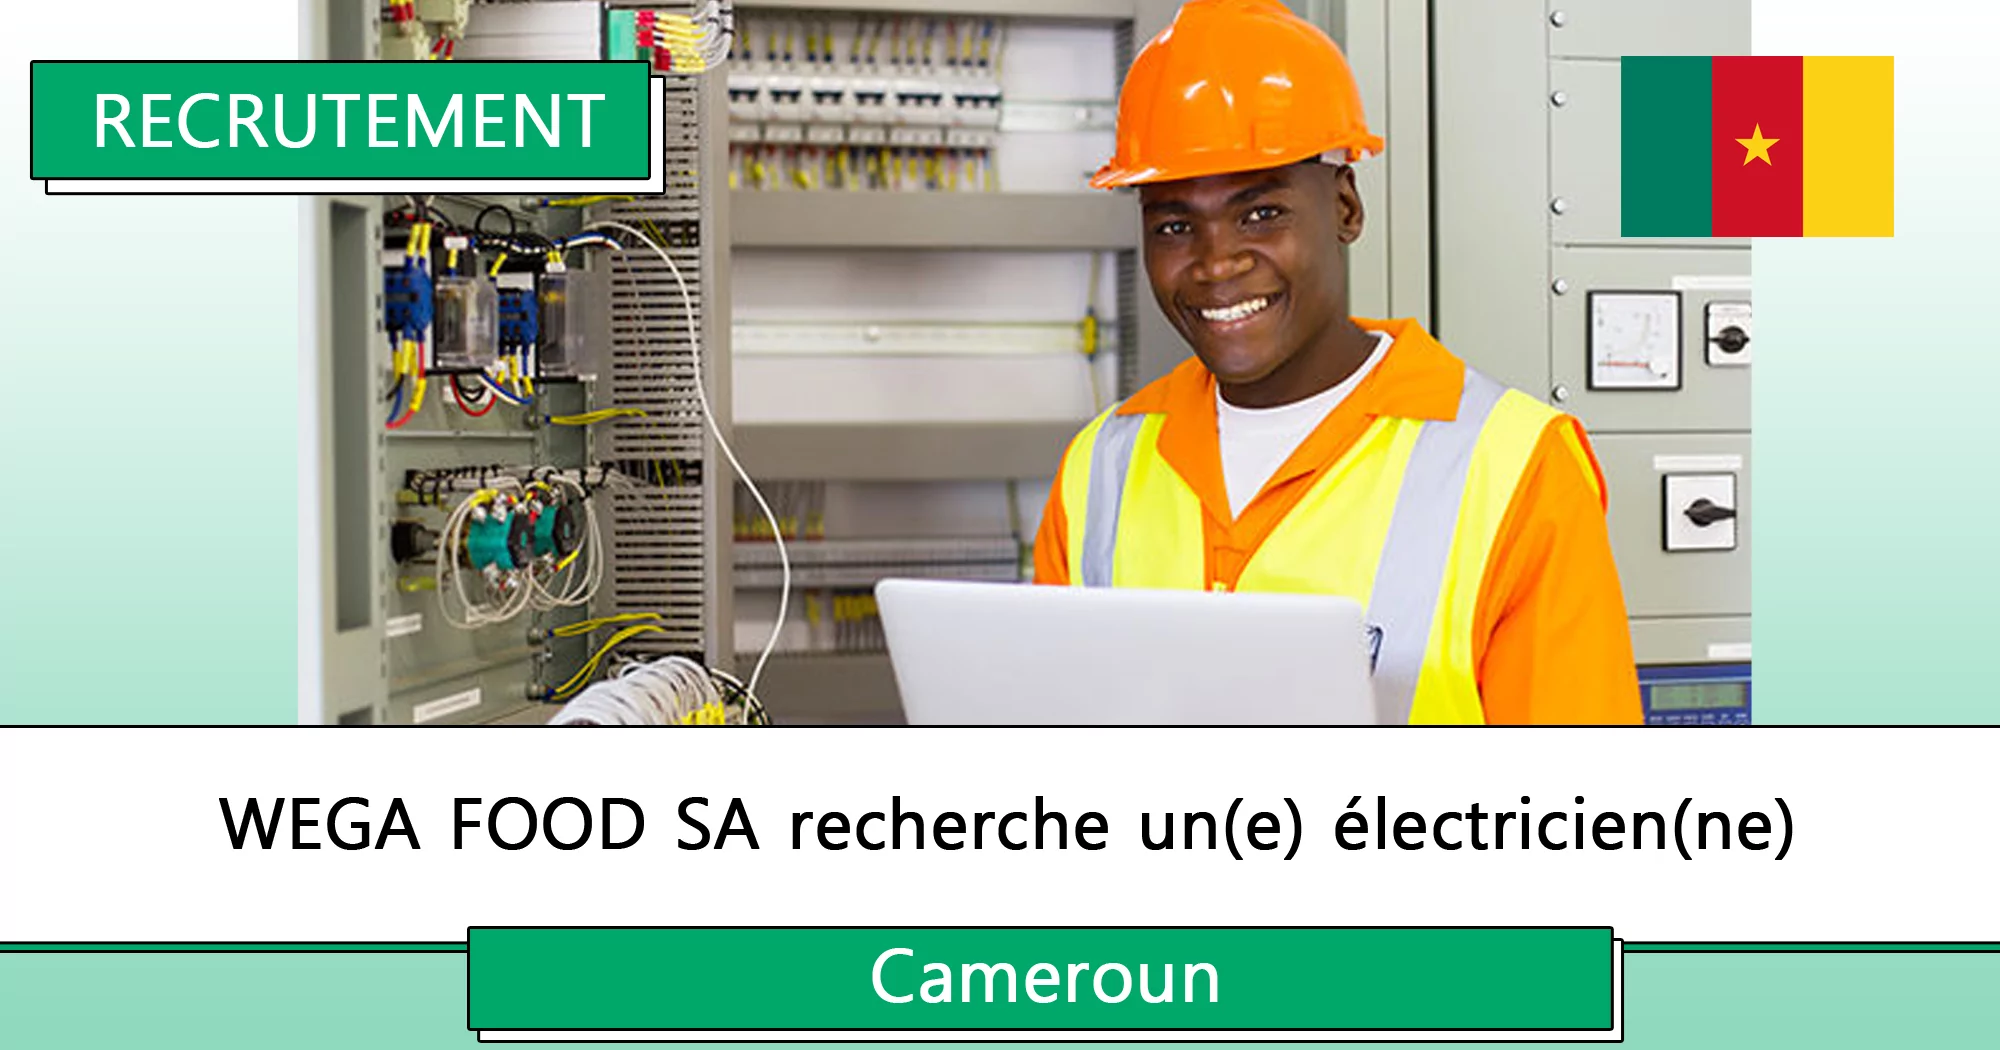 WEGA FOOD SA recherche un(e) électricien(ne), Cameroun